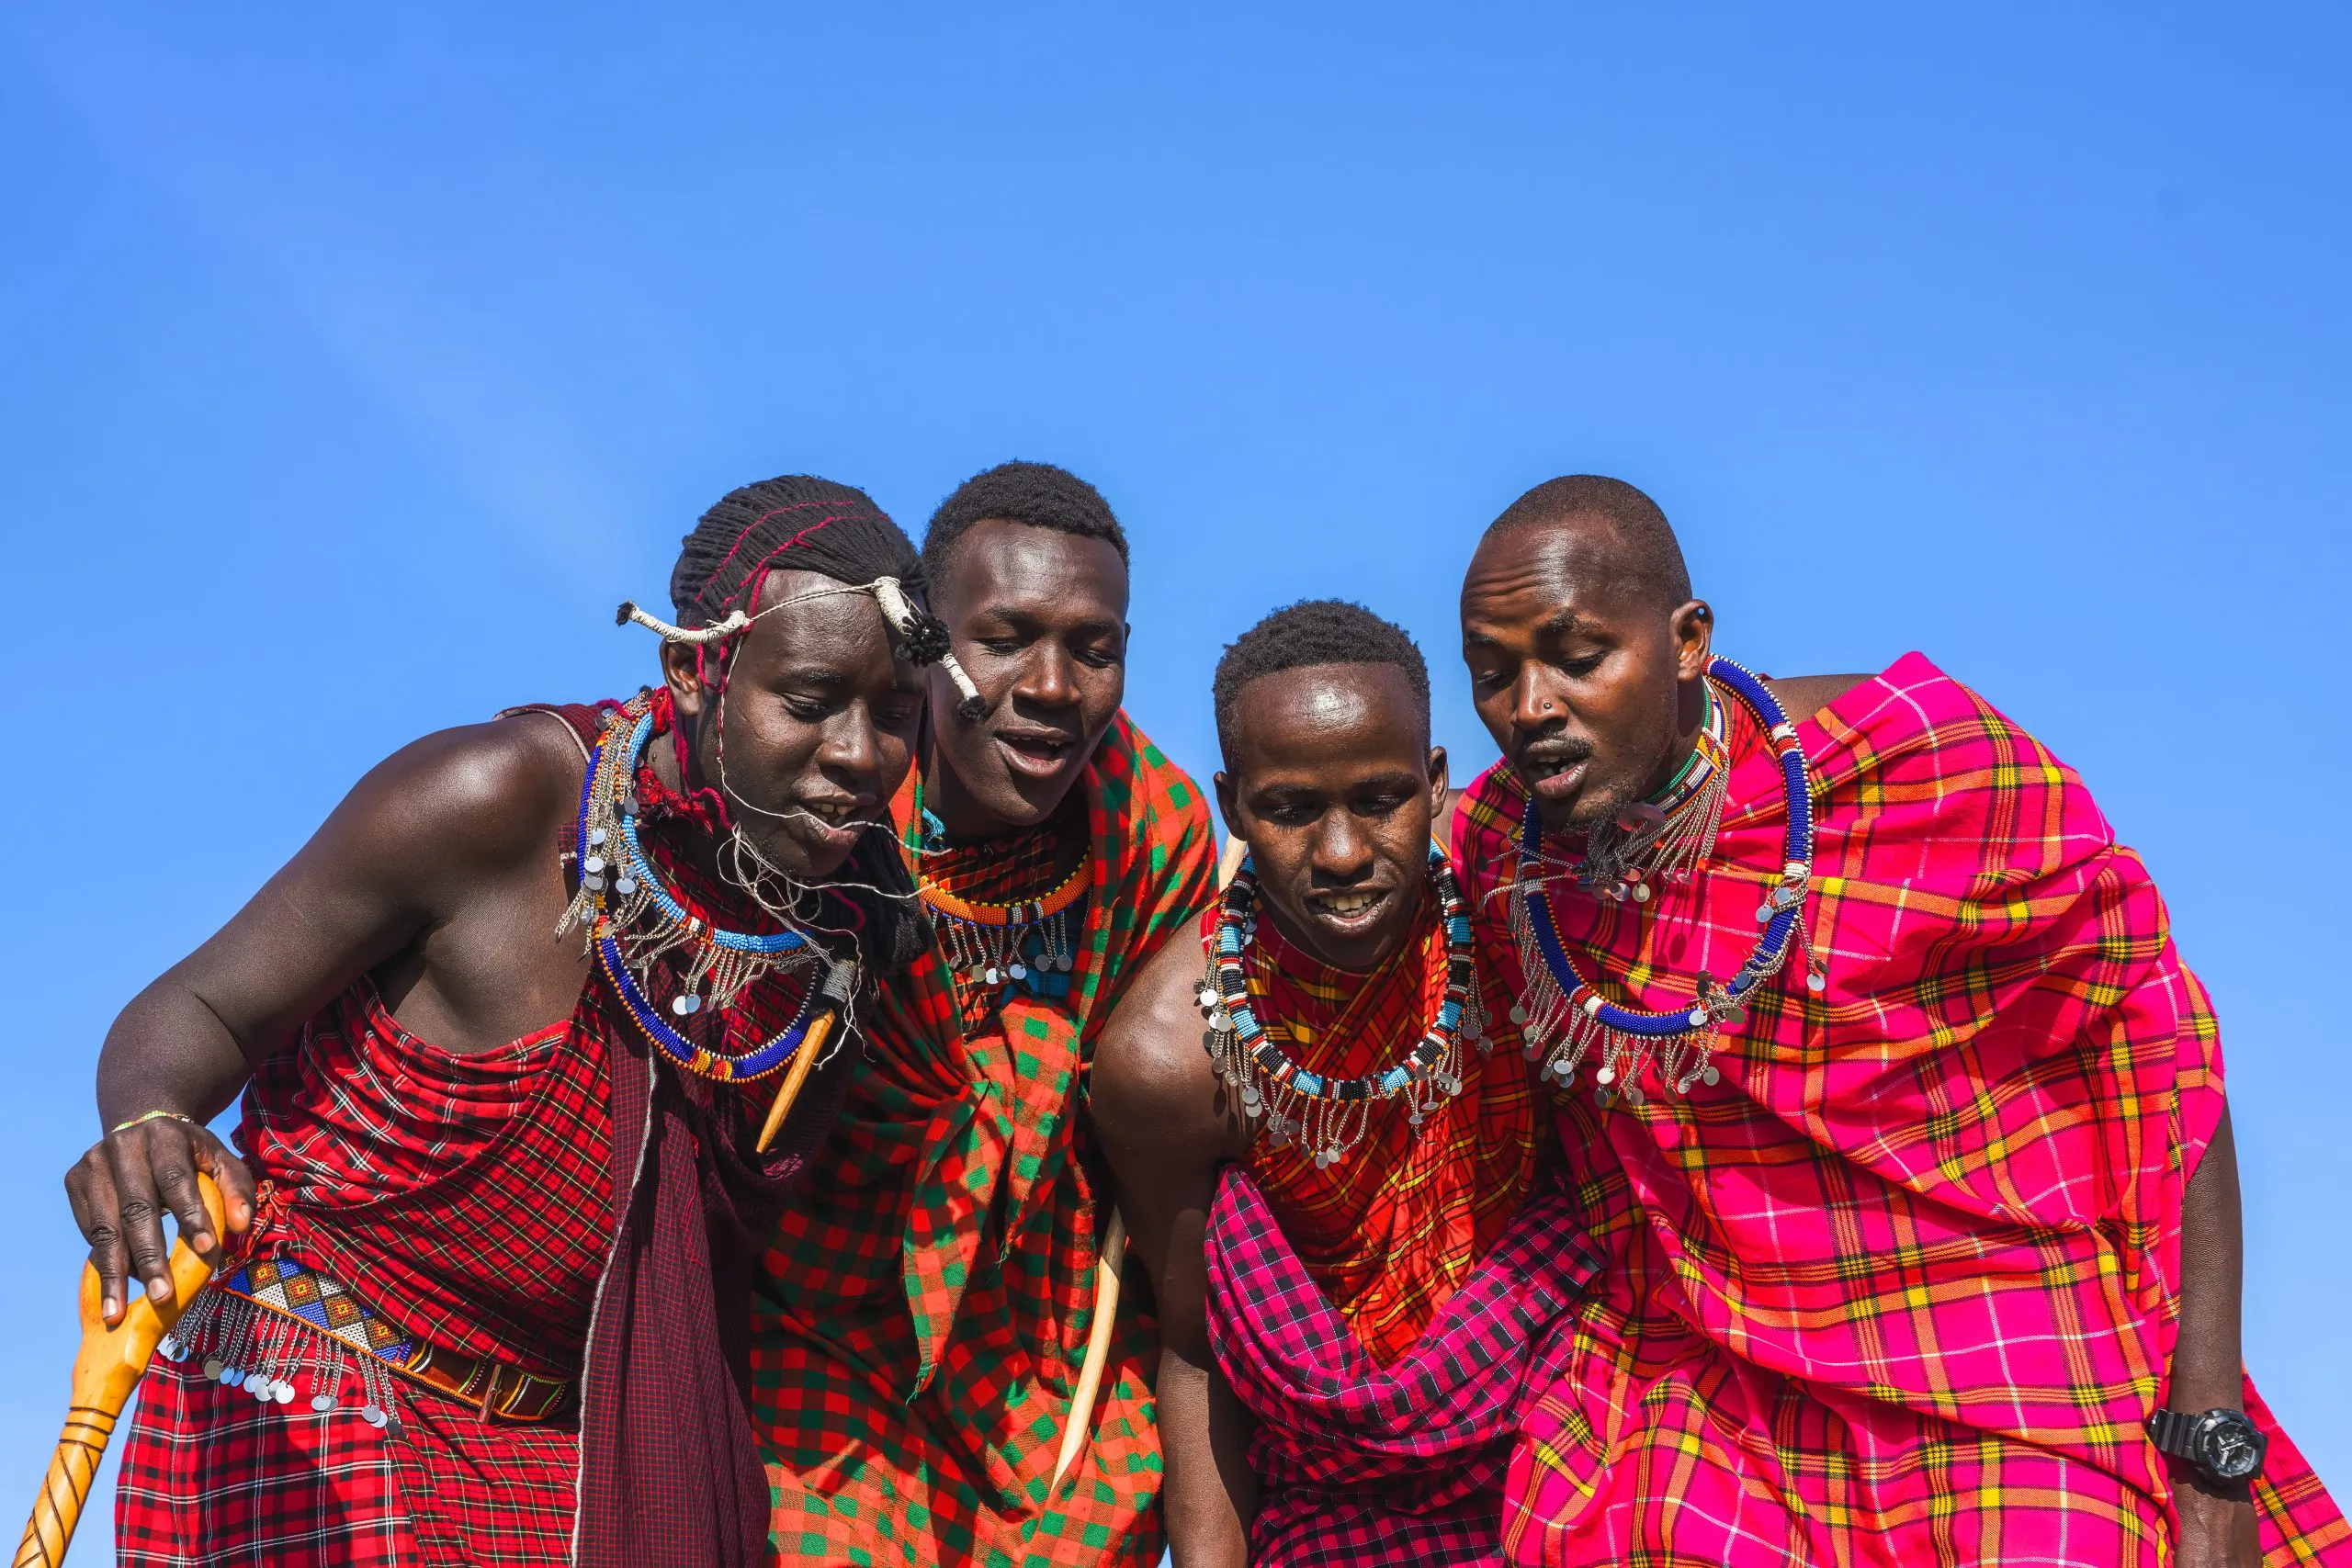 Uomo del Mara Maasai che mostra la tradizionale danza del salto dei Maasai